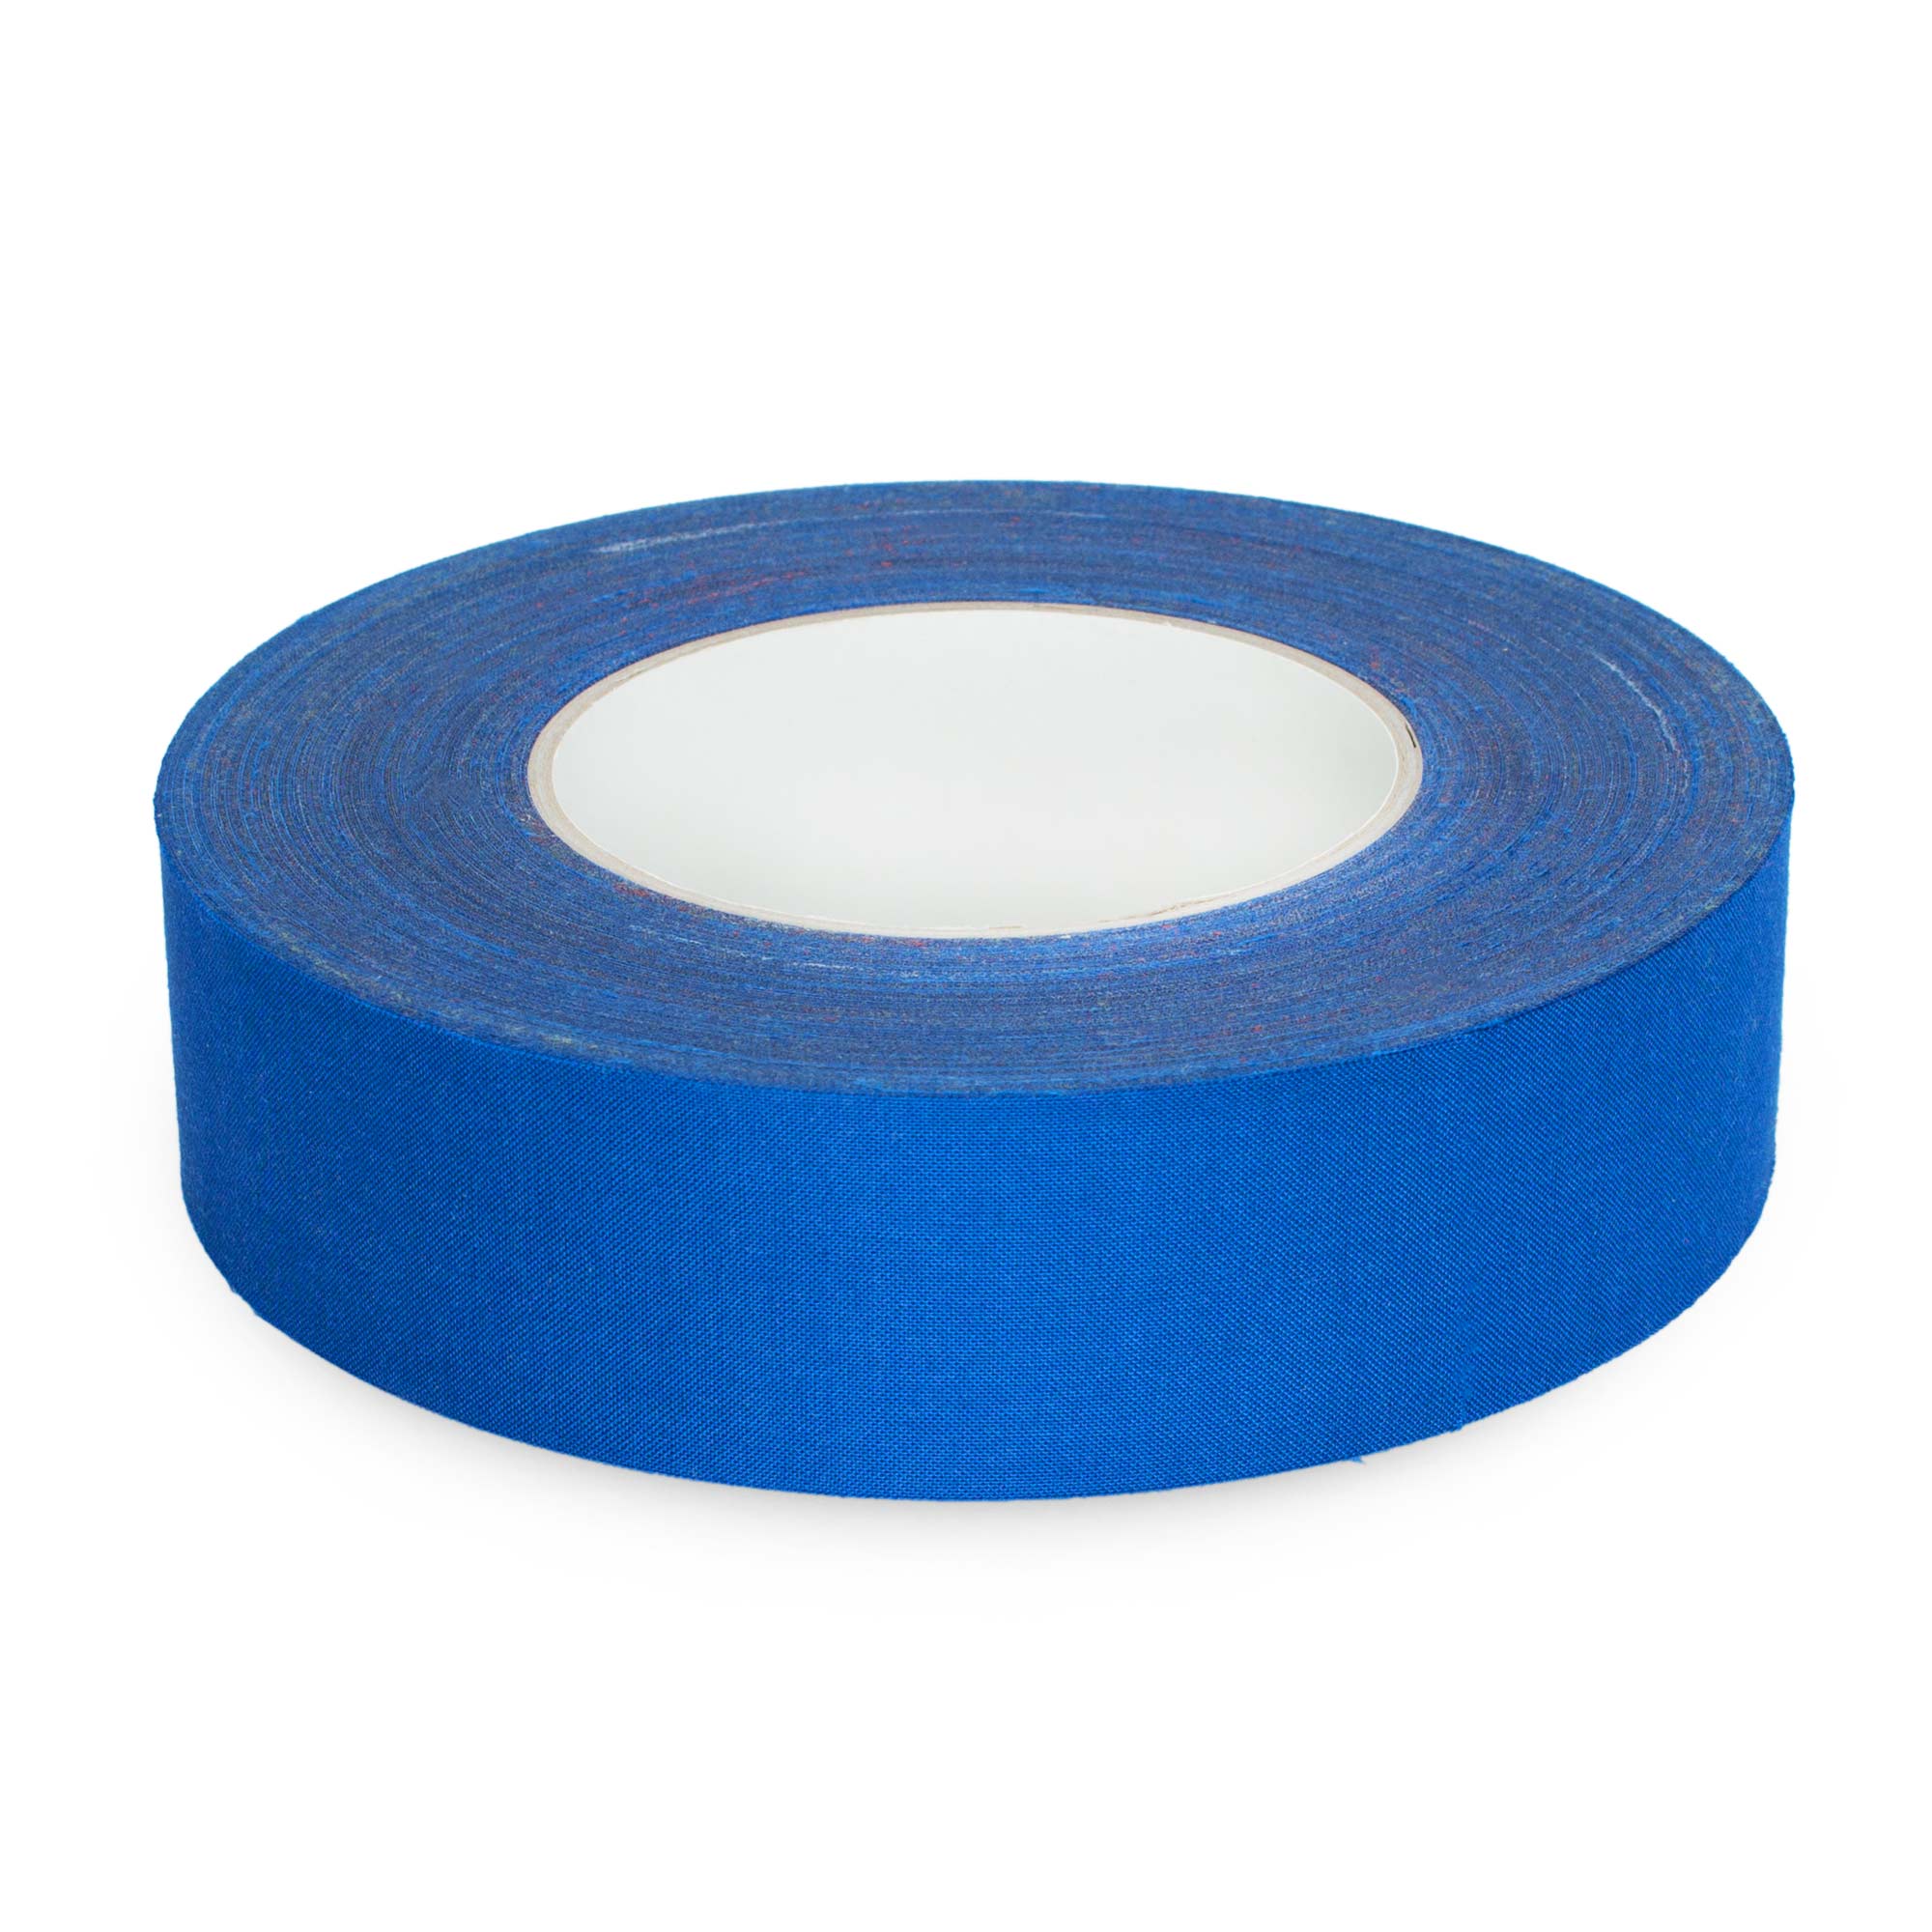 unpackaged blue 3.8cm wide tape